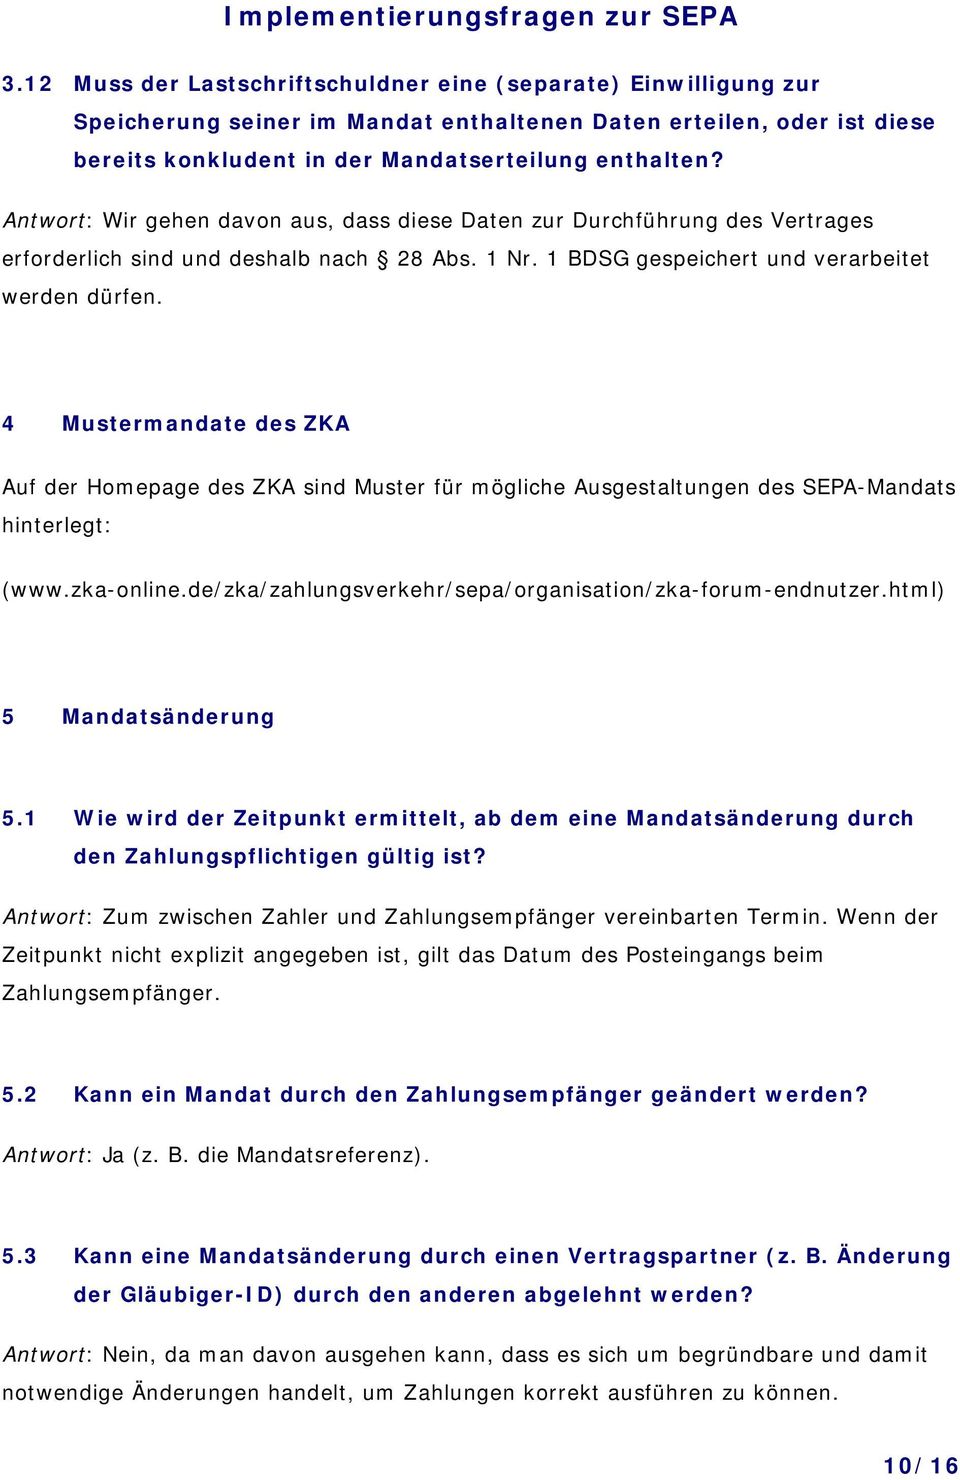 4 Mustermandate des ZKA Auf der Homepage des ZKA sind Muster für mögliche Ausgestaltungen des SEPA-Mandats hinterlegt: (www.zka-online.de/zka/zahlungsverkehr/sepa/organisation/zka-forum-endnutzer.